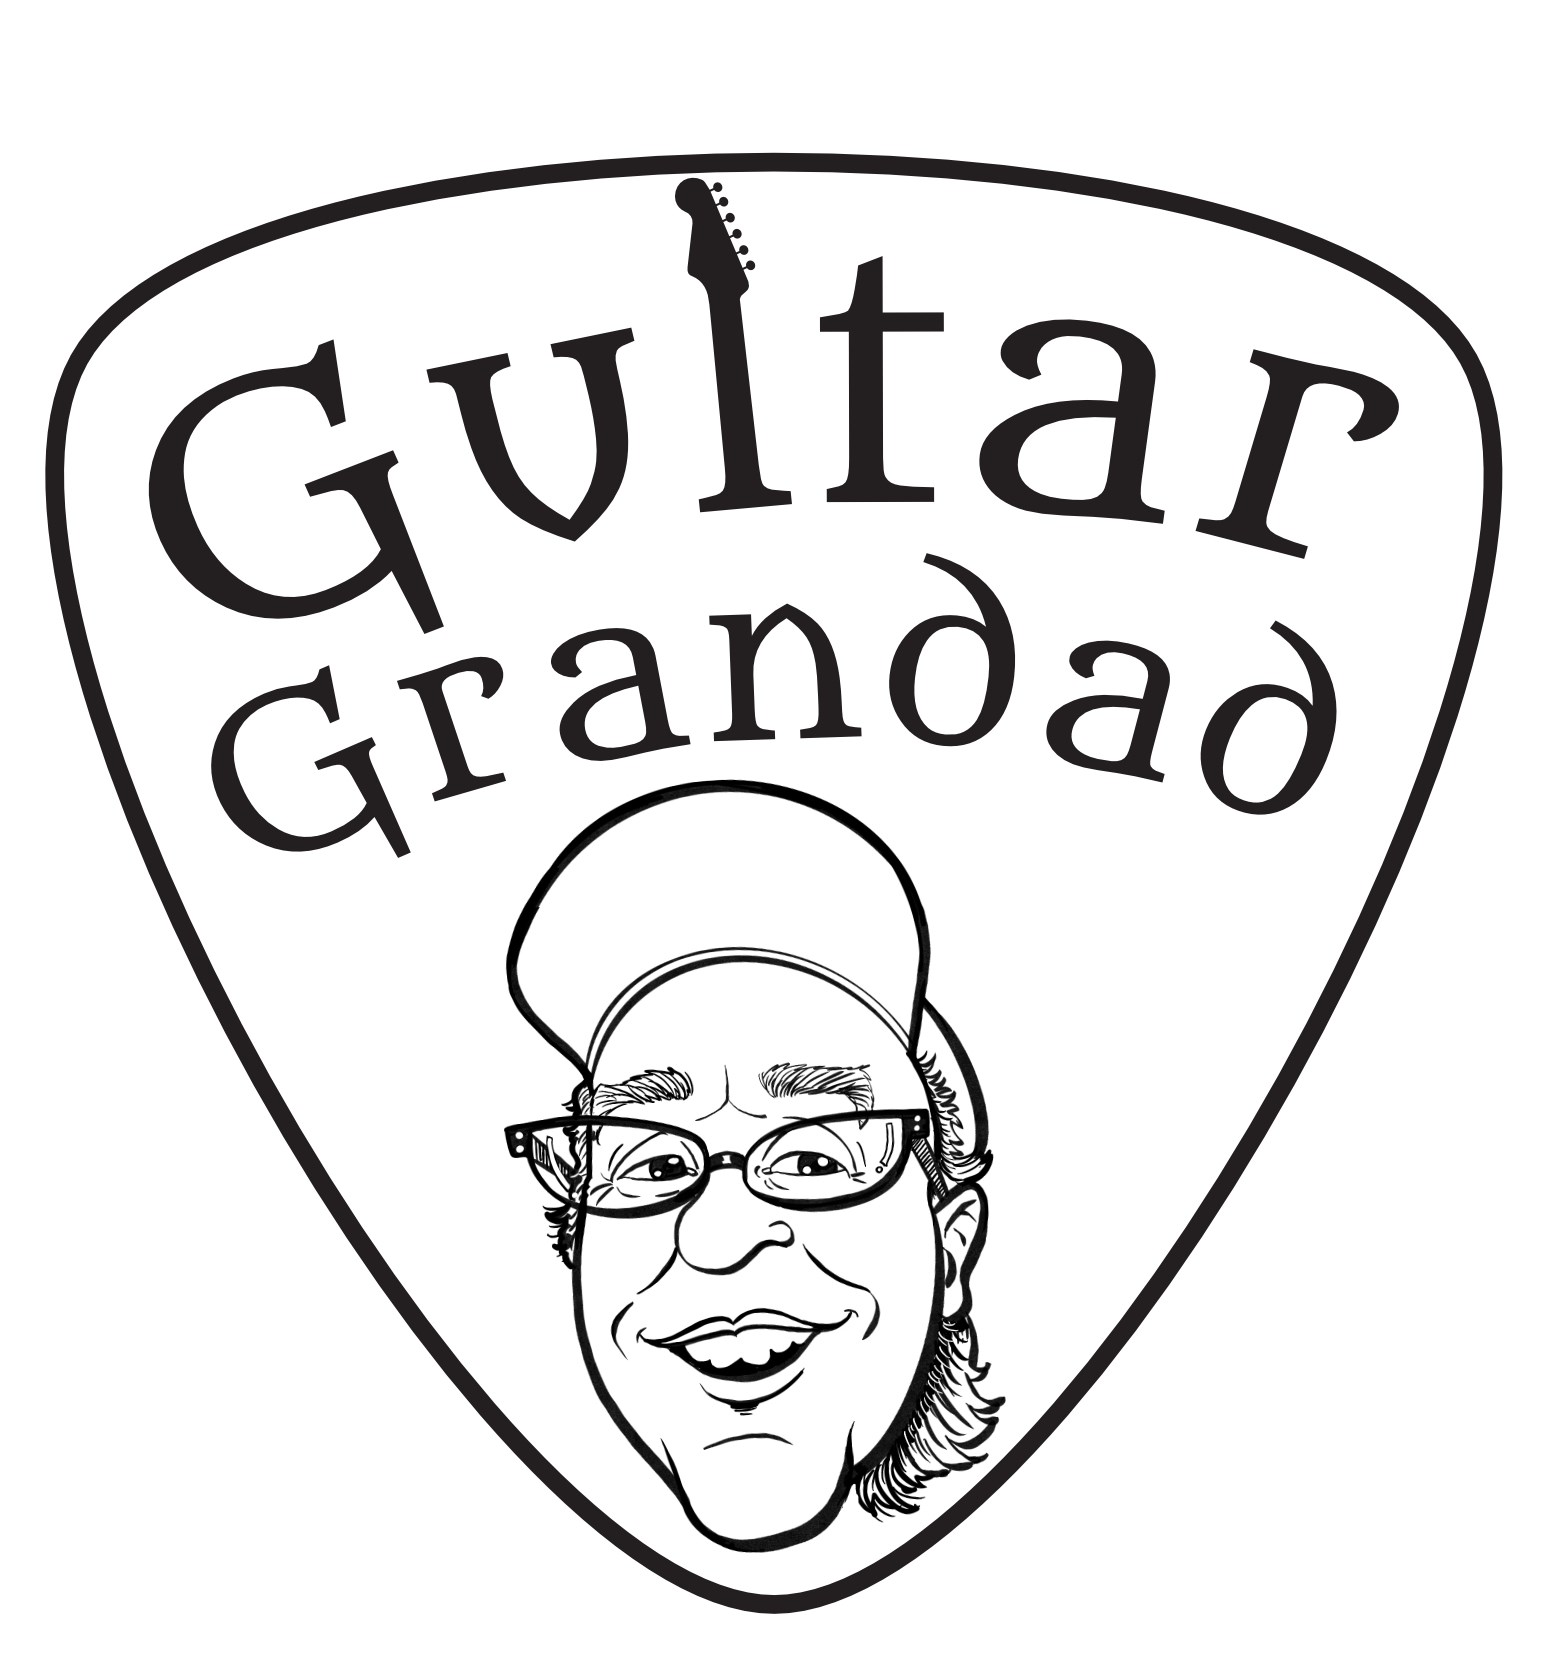 0850 Guitar Grandad pick charcoal.jpg